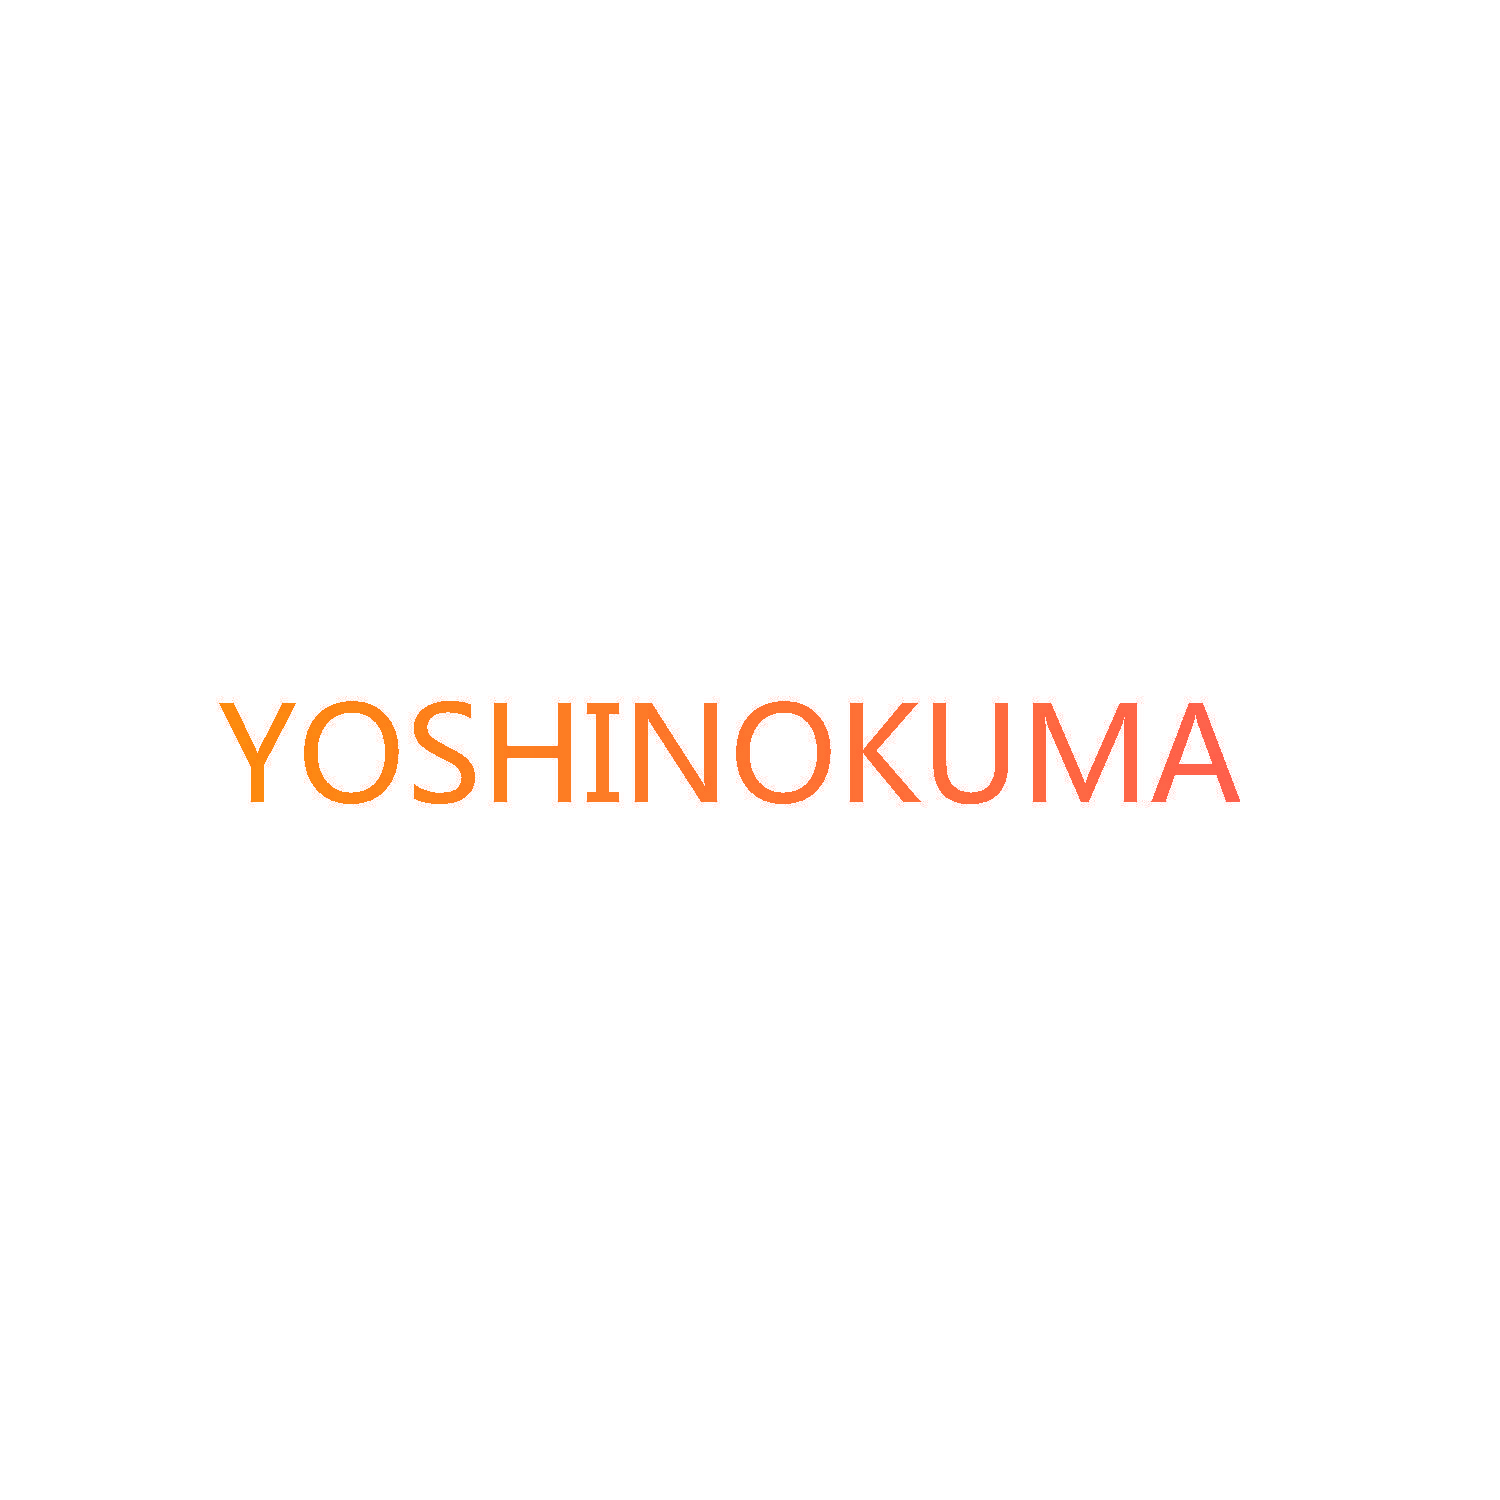 YOSHINOKUMA